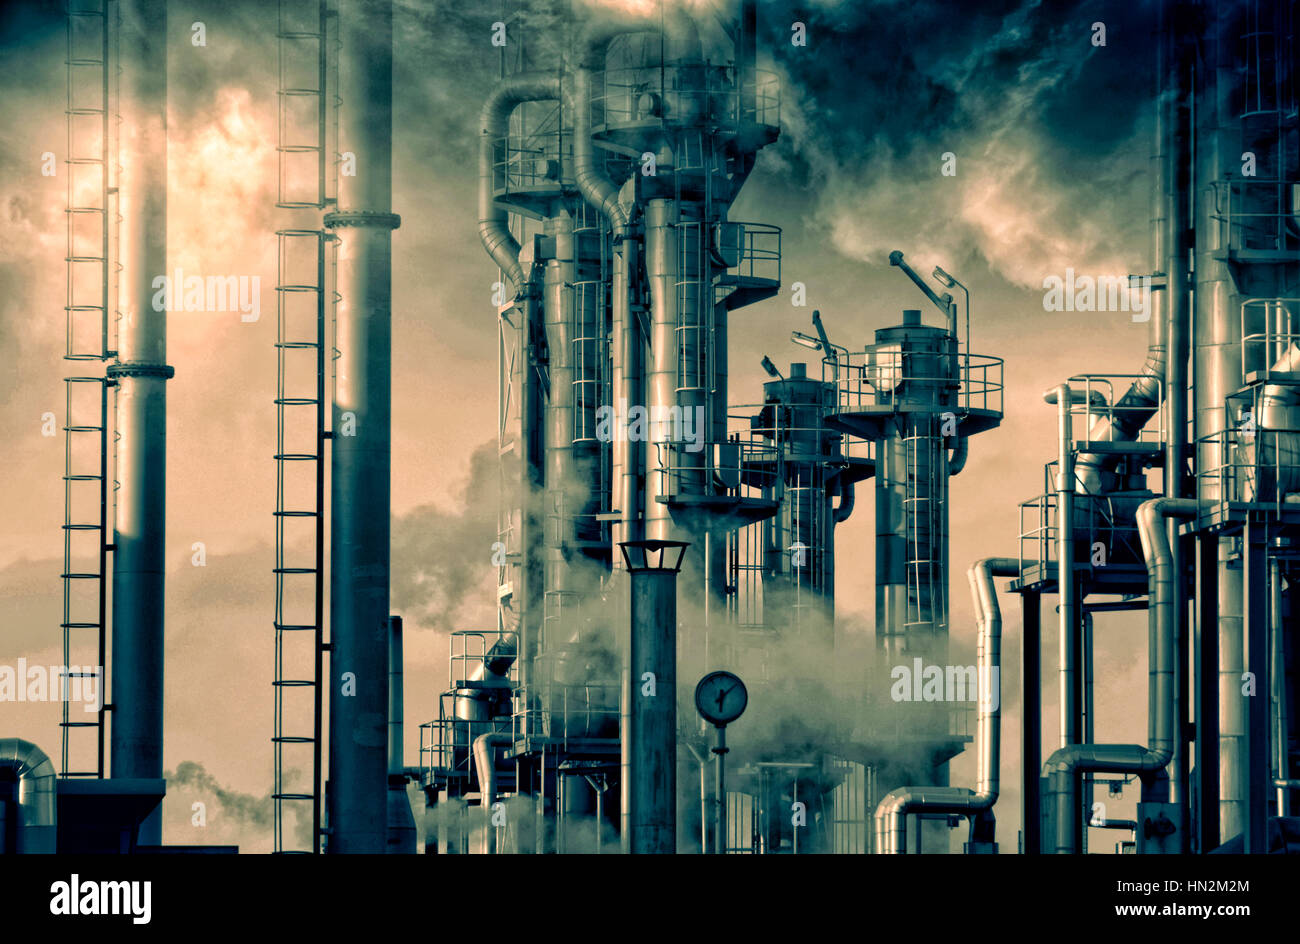 Öl-Raffinerie mit Rauch und Schornsteinen. Stockfoto